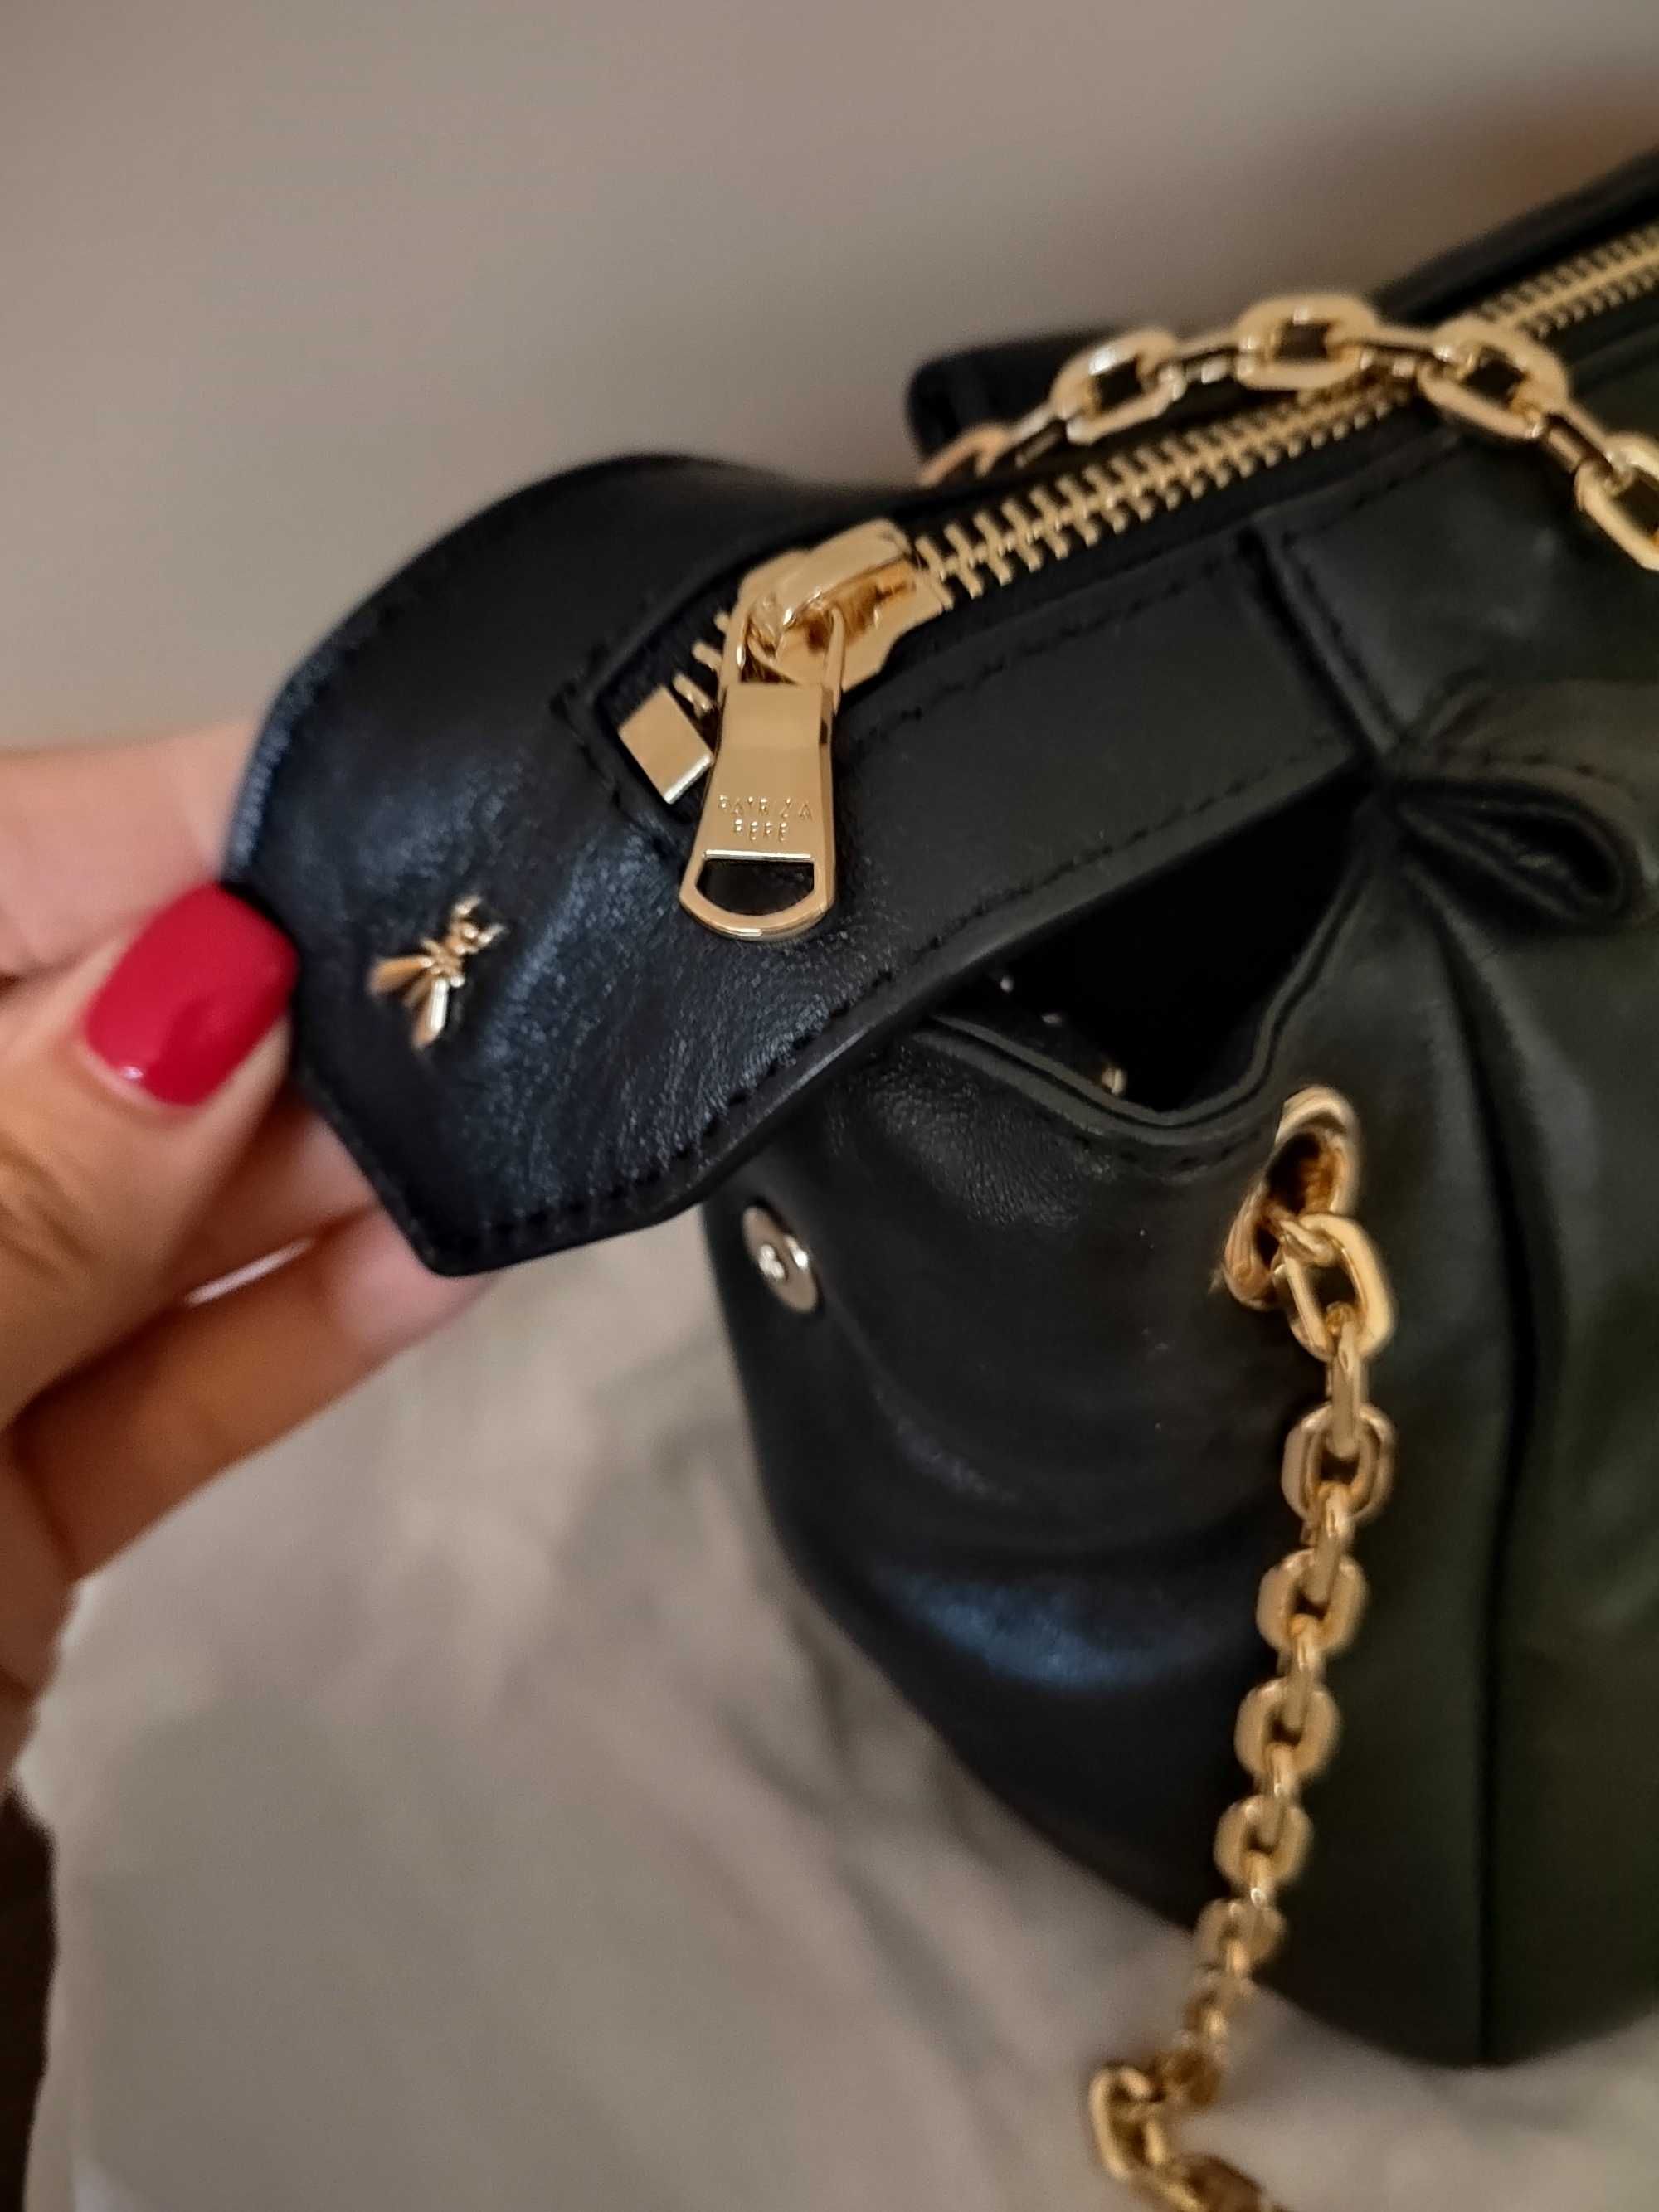 Чанта Patrizia Pepe